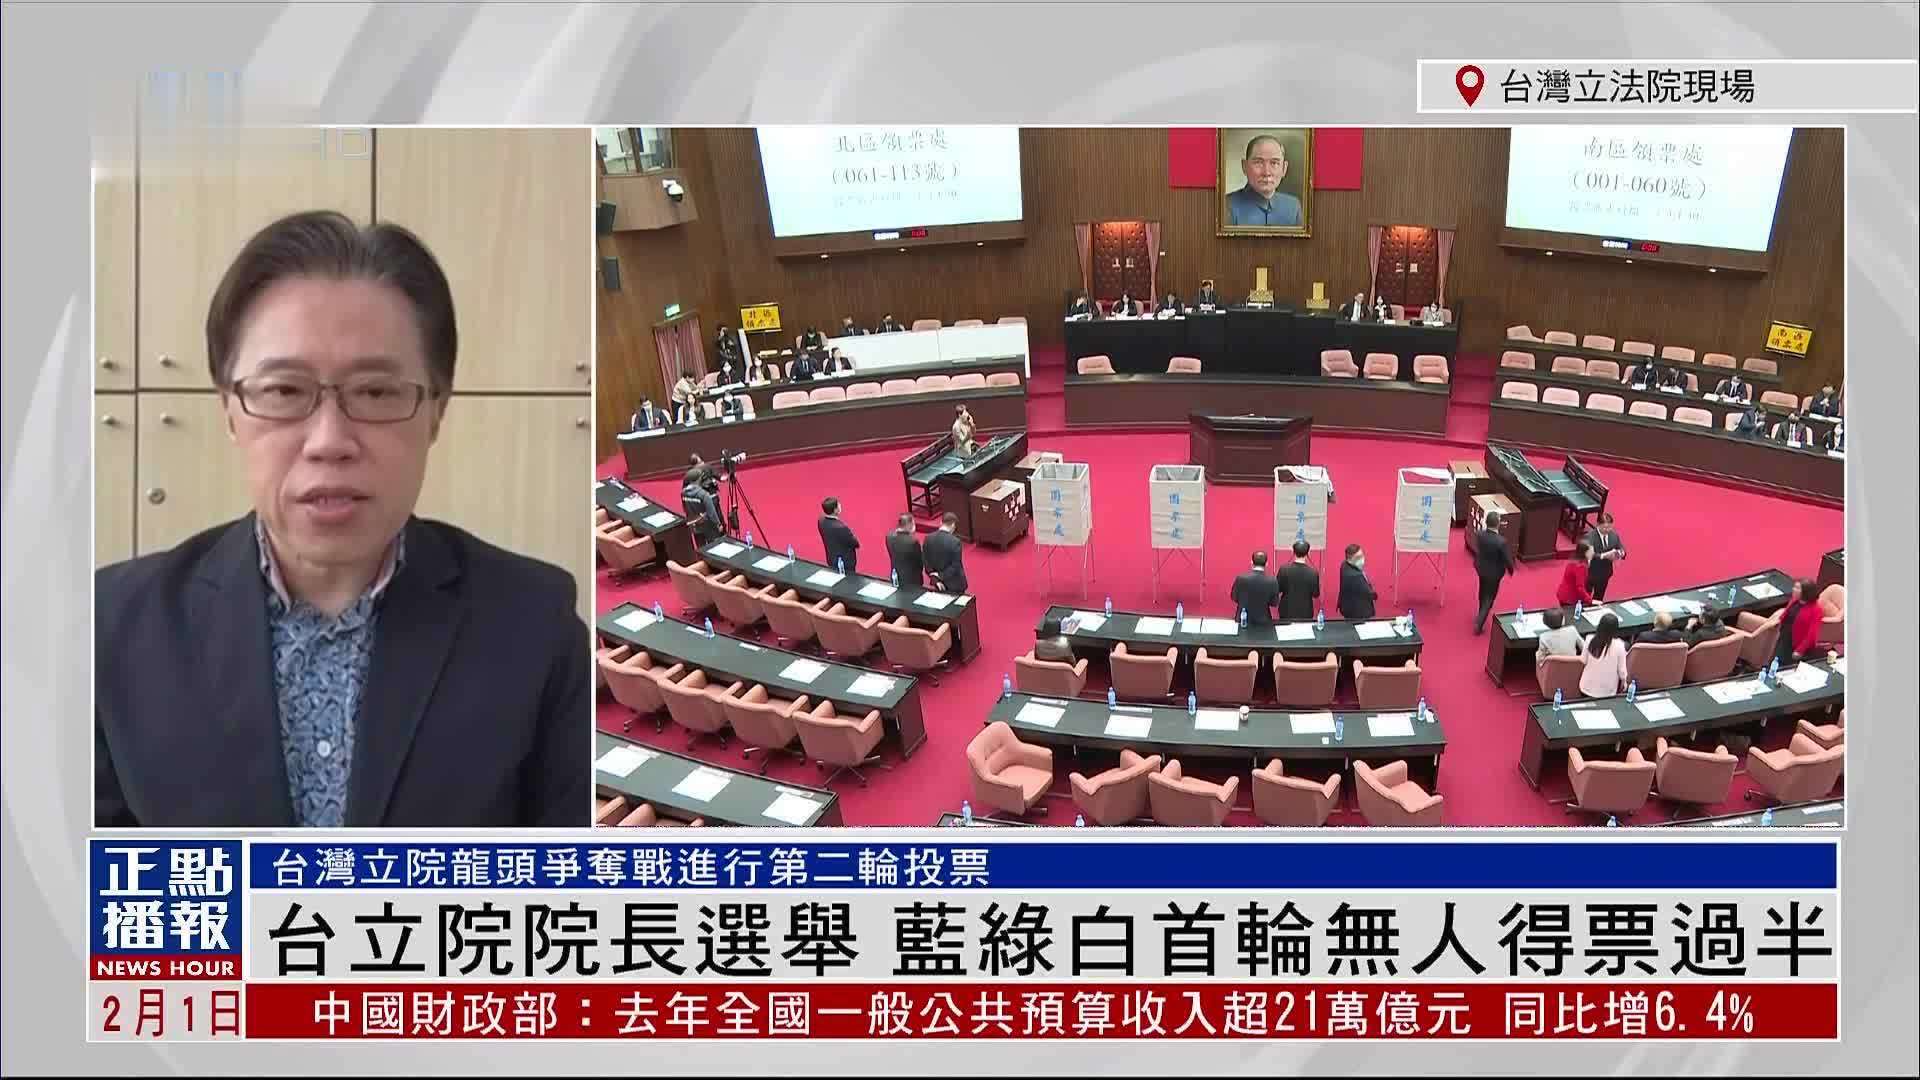 钮则勋:台湾立法院院长选举 蓝绿白首轮无人得票过半